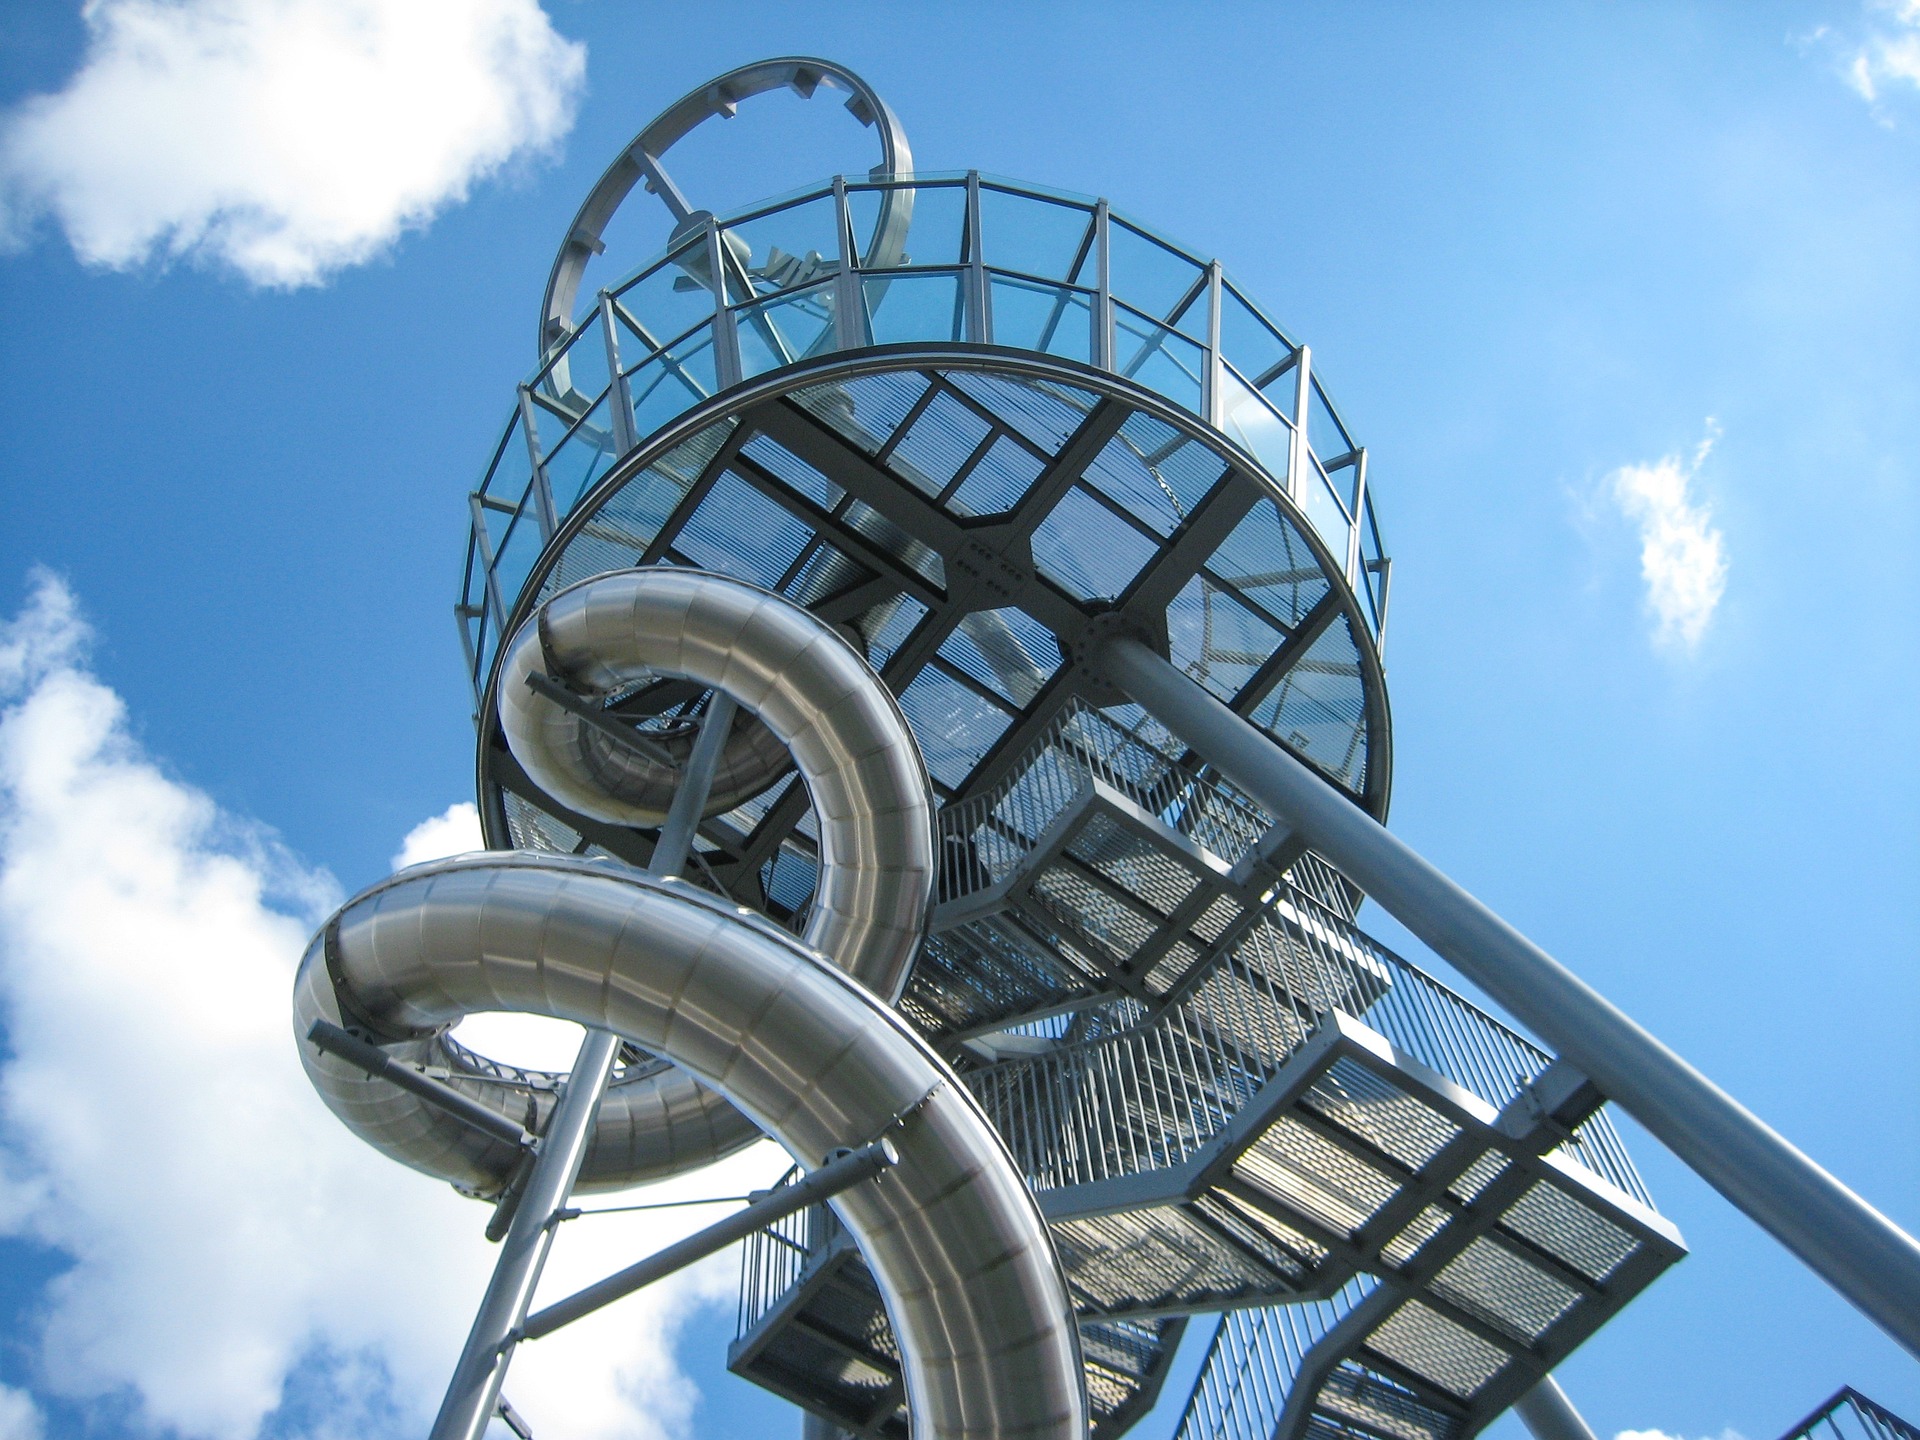 La torre dello scivolo Vitra è un'attrazione turistica assoluta: Torre panoramica, scivolo e opera d'arte.